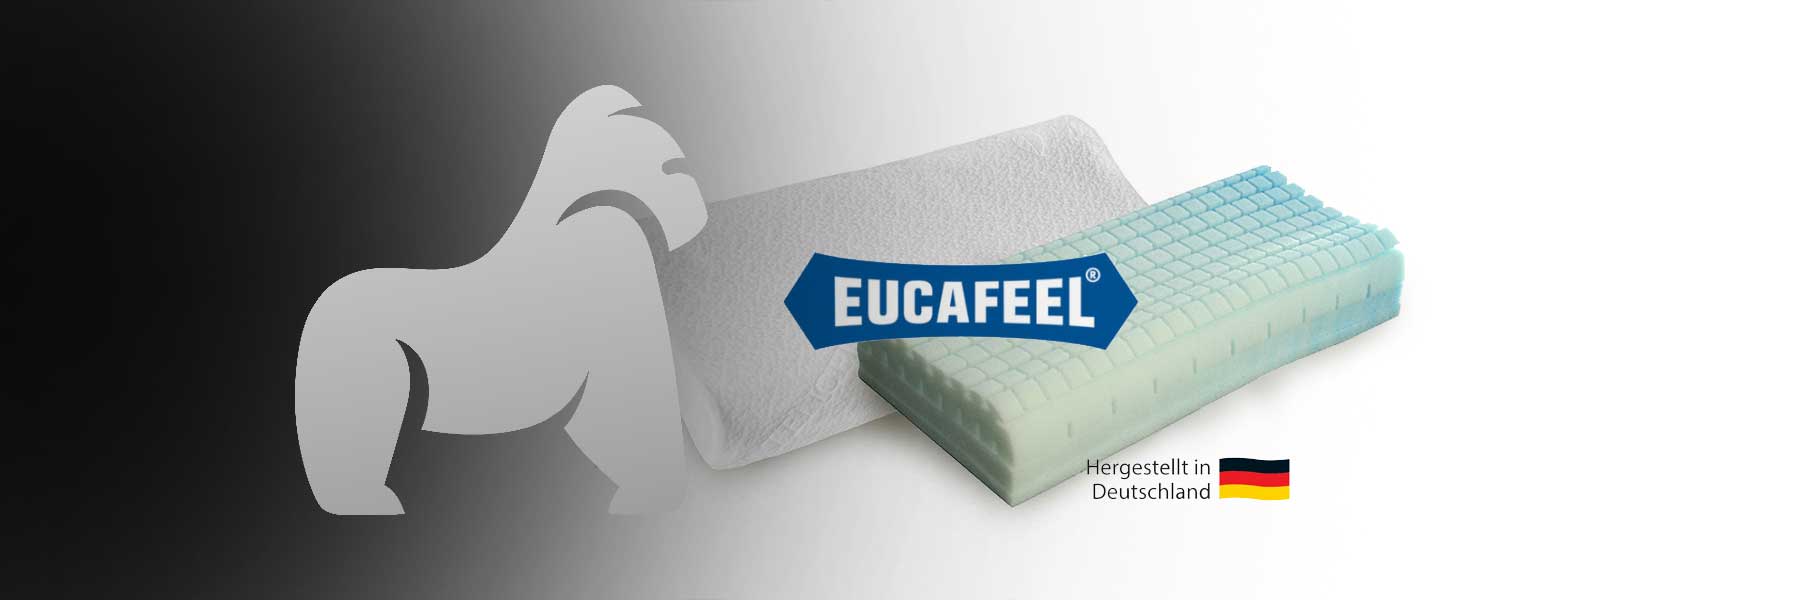 Die Innovation von Eucafeel-Schaumstoff enthüllt: Die Vorteile von Eucafeel-Kissen